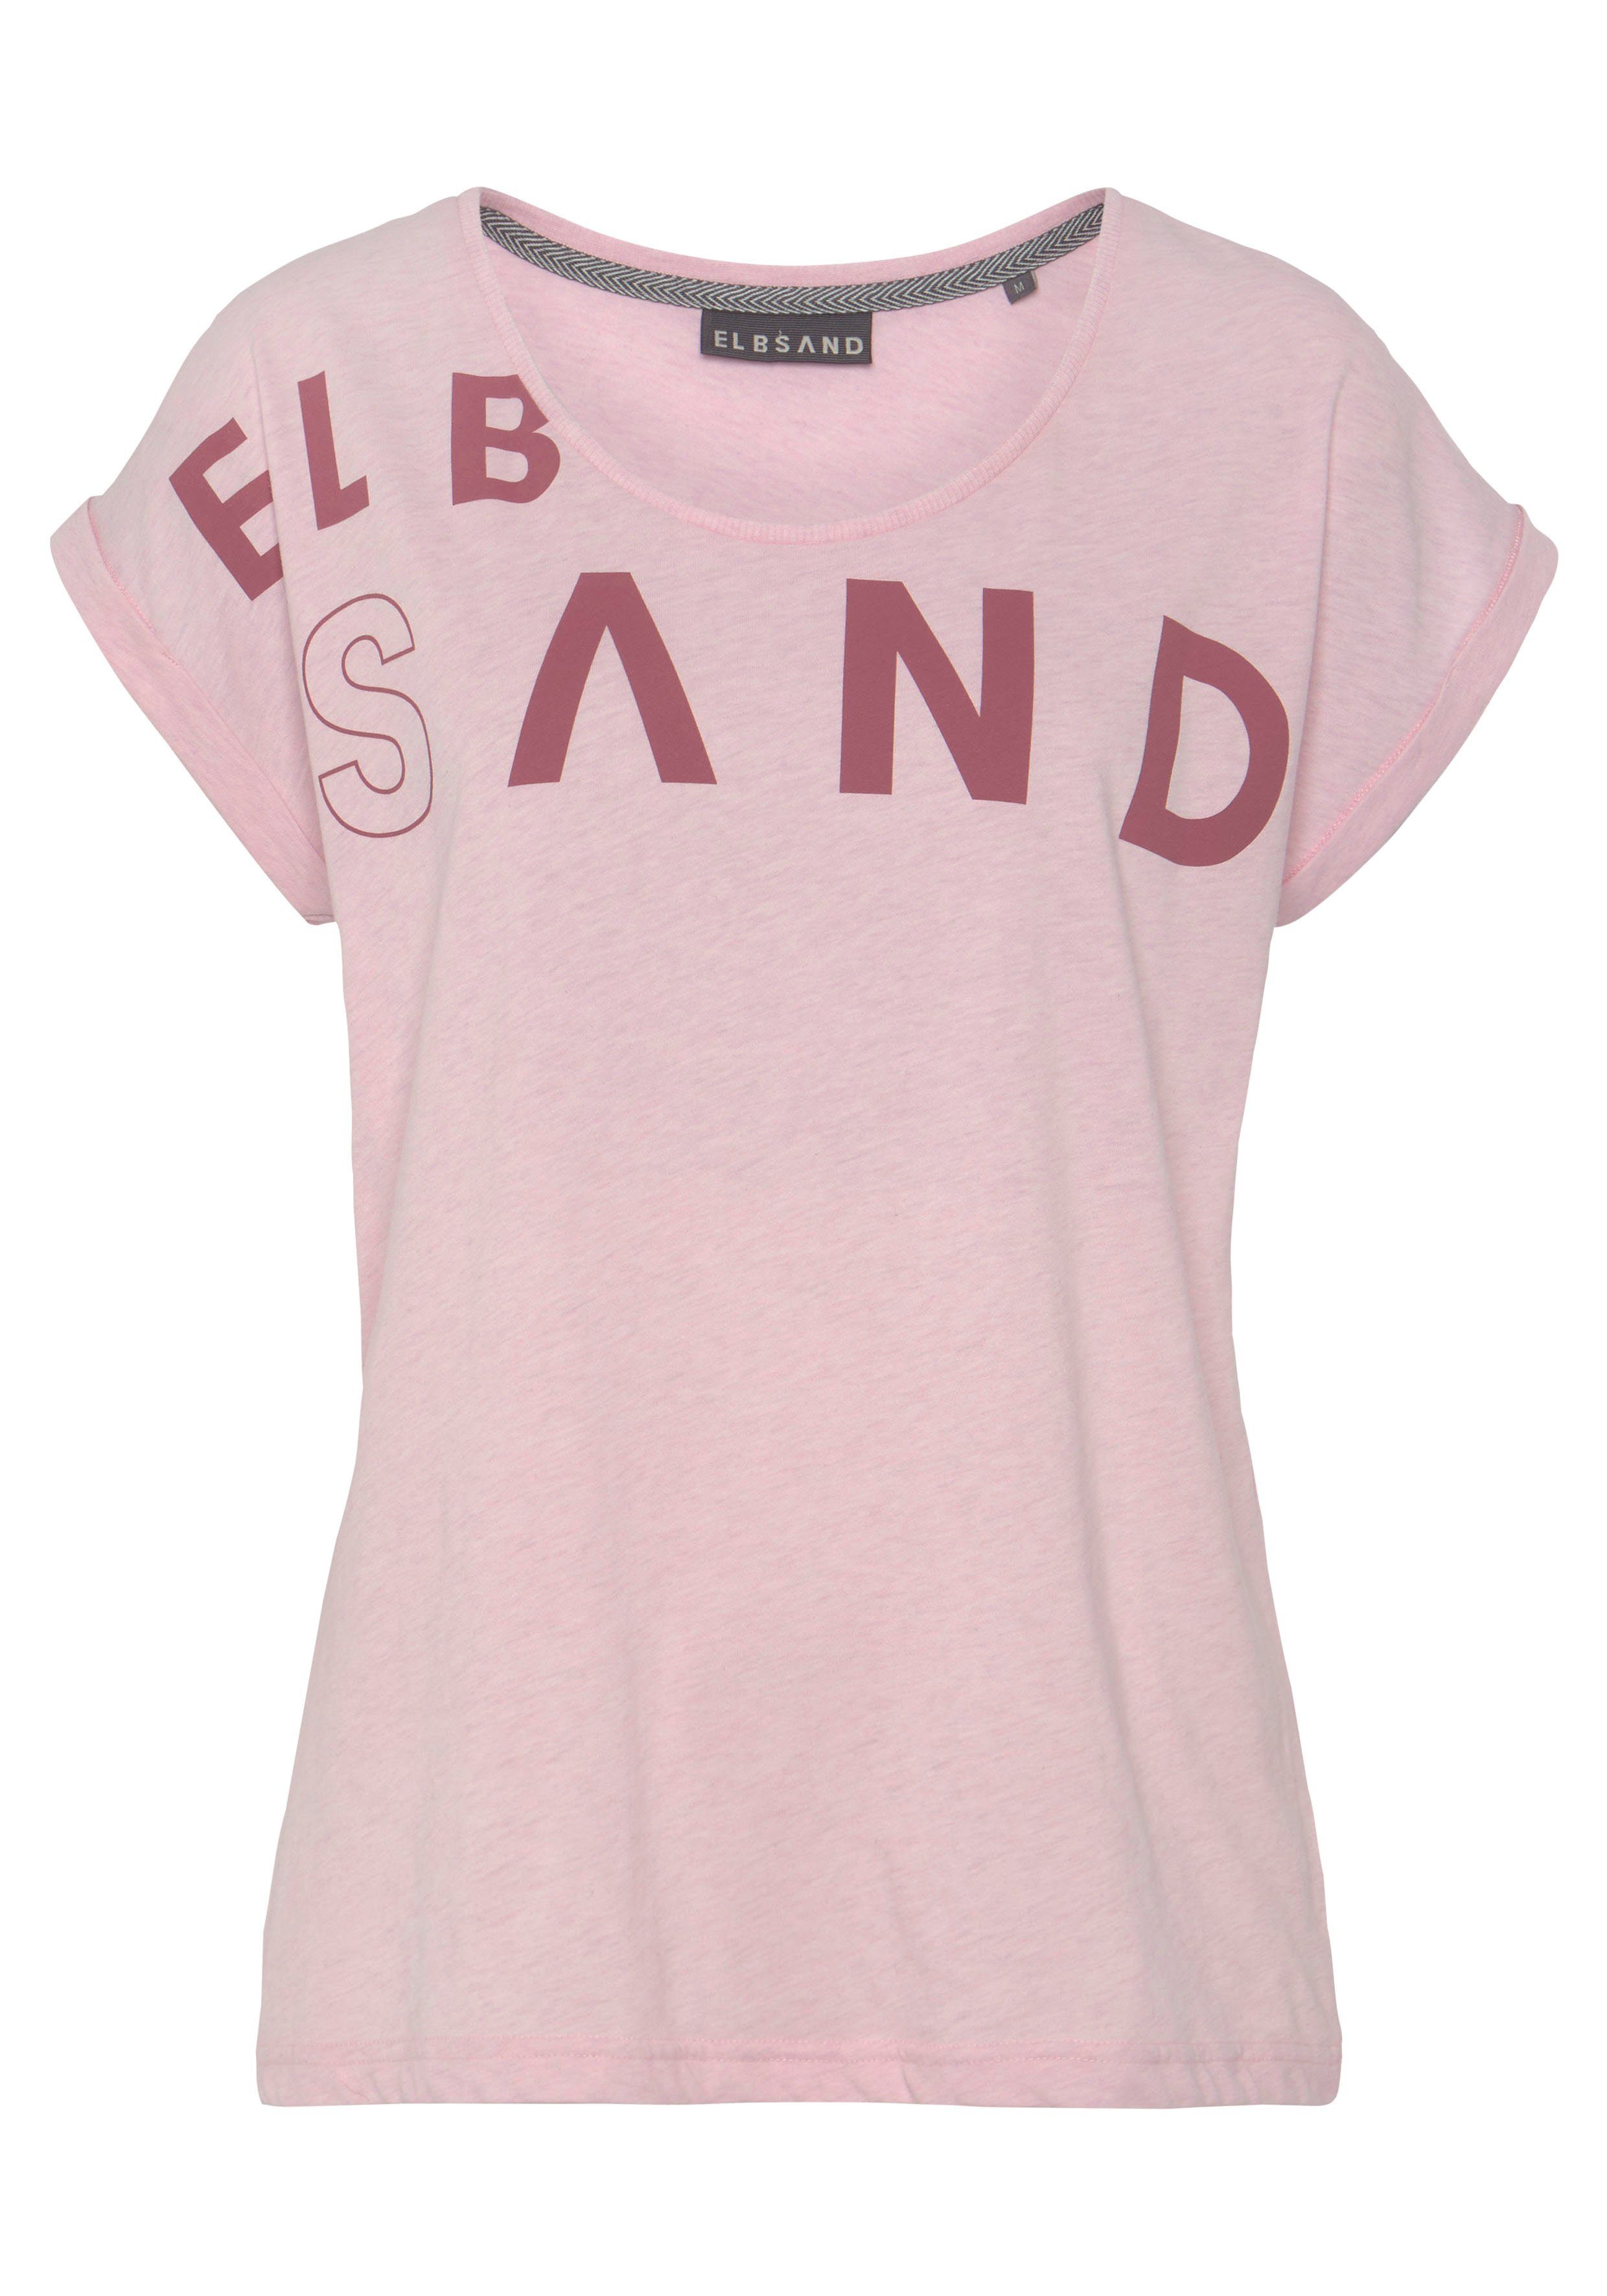 Elbsand weichem rosa T-Shirt und Kurzarmshirt, Jersey, aus bequem sportlich